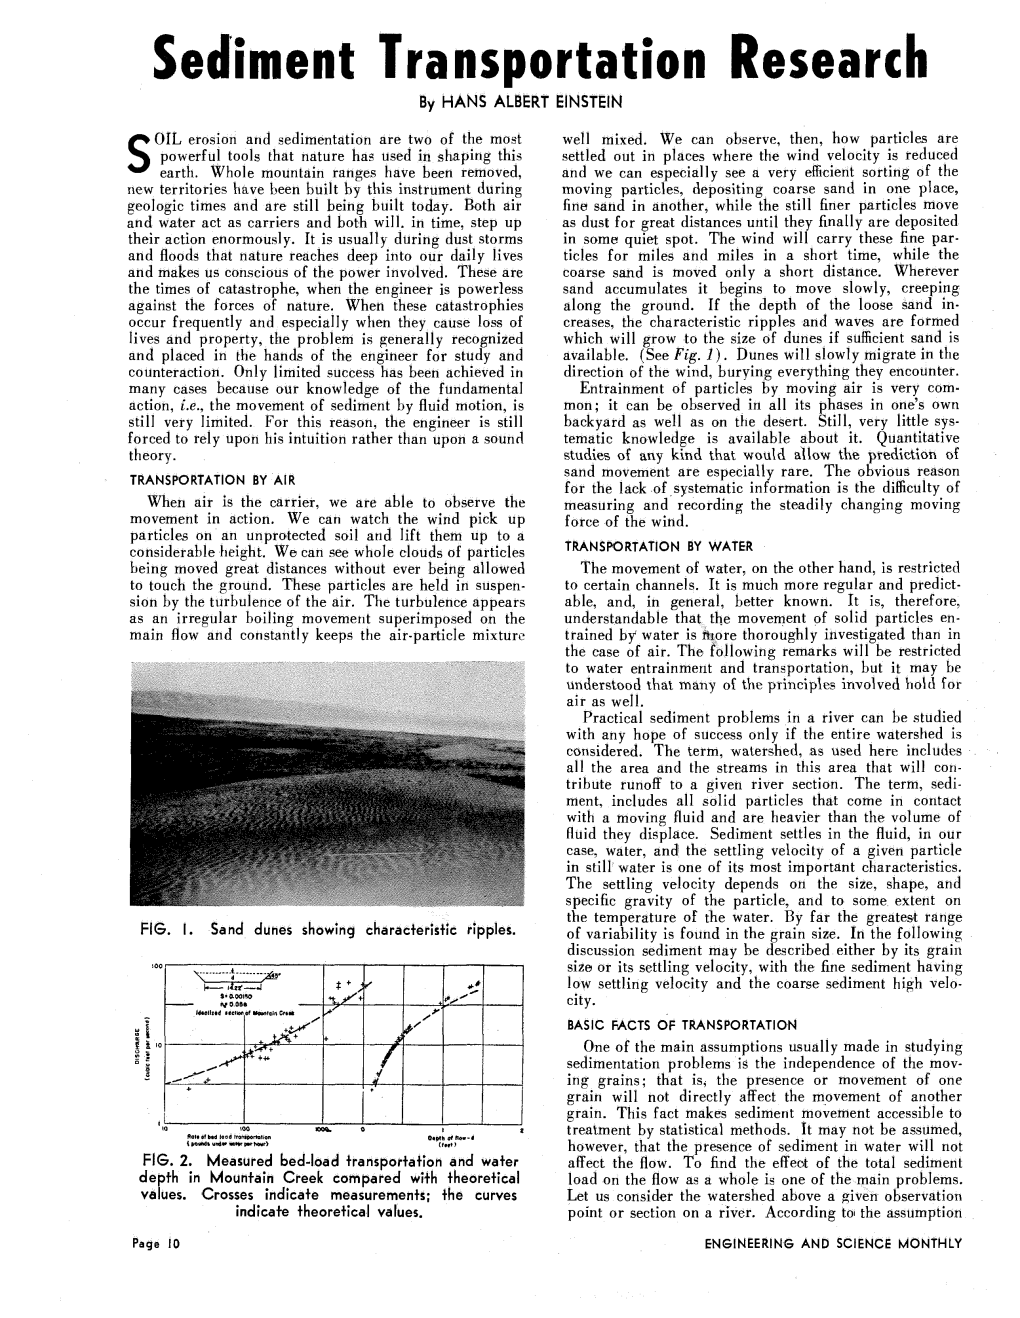 Sediment Transportation Research by HANS ALBERT EINSTEIN